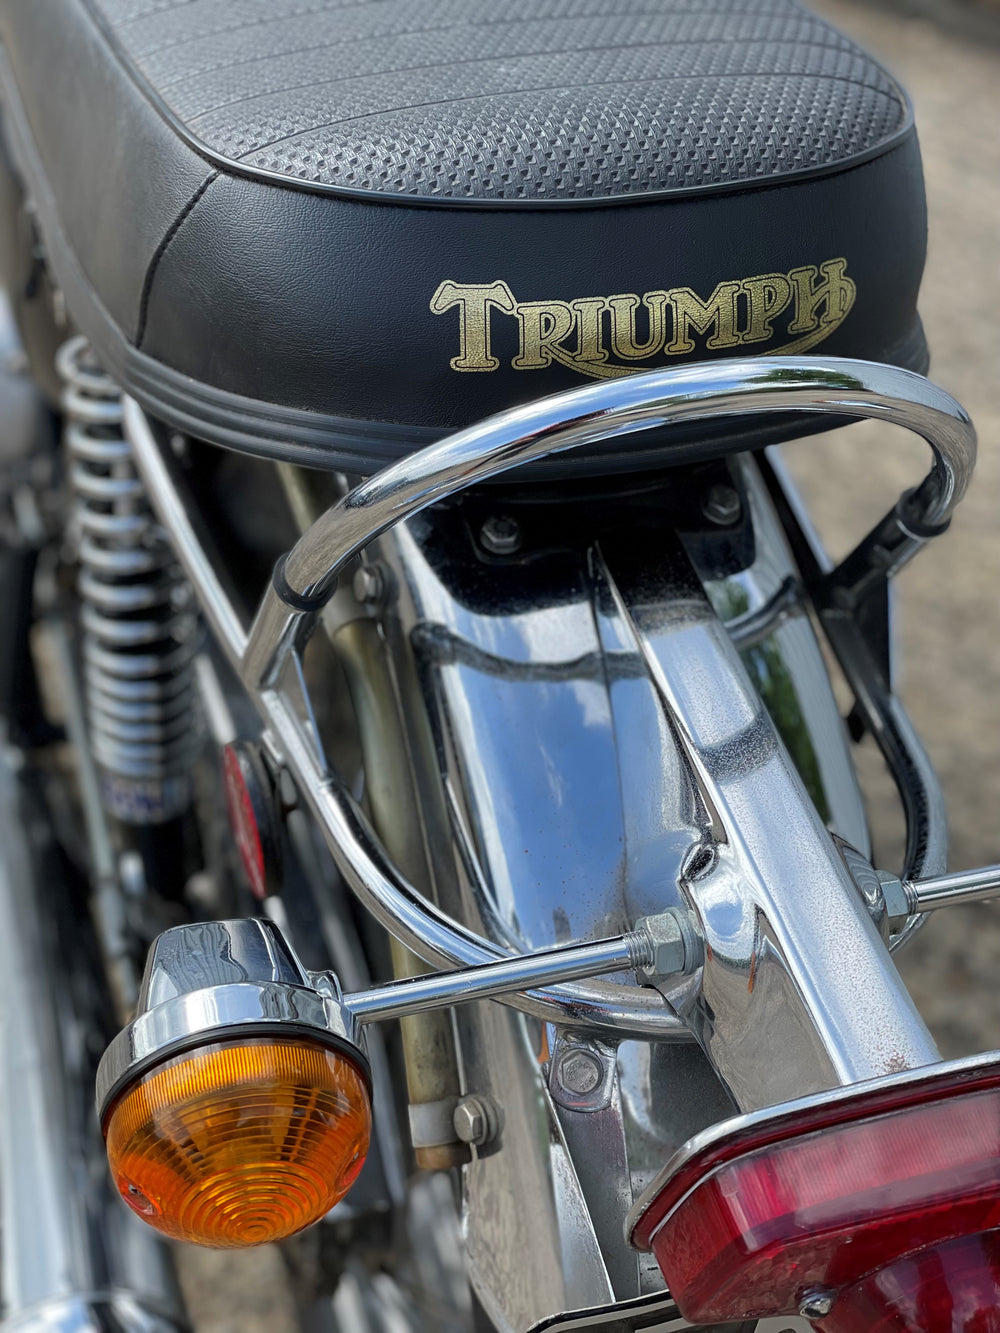 1972 Triumph Bonneville T120v 650 Gold